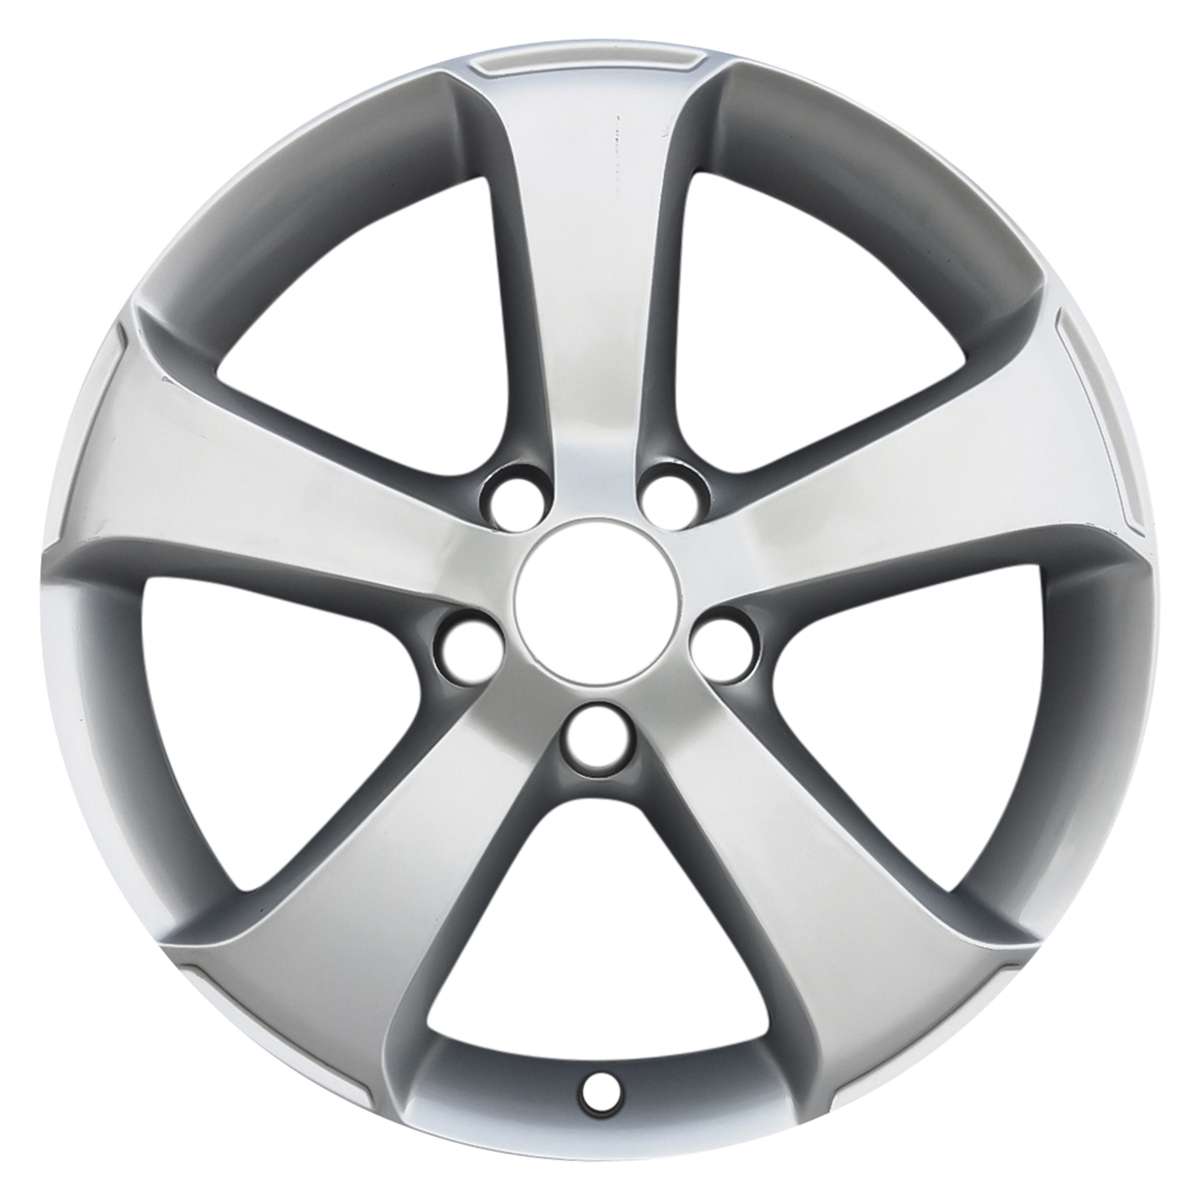 2013 Volkswagen Passat 17" OEM Wheel Rim W98763S